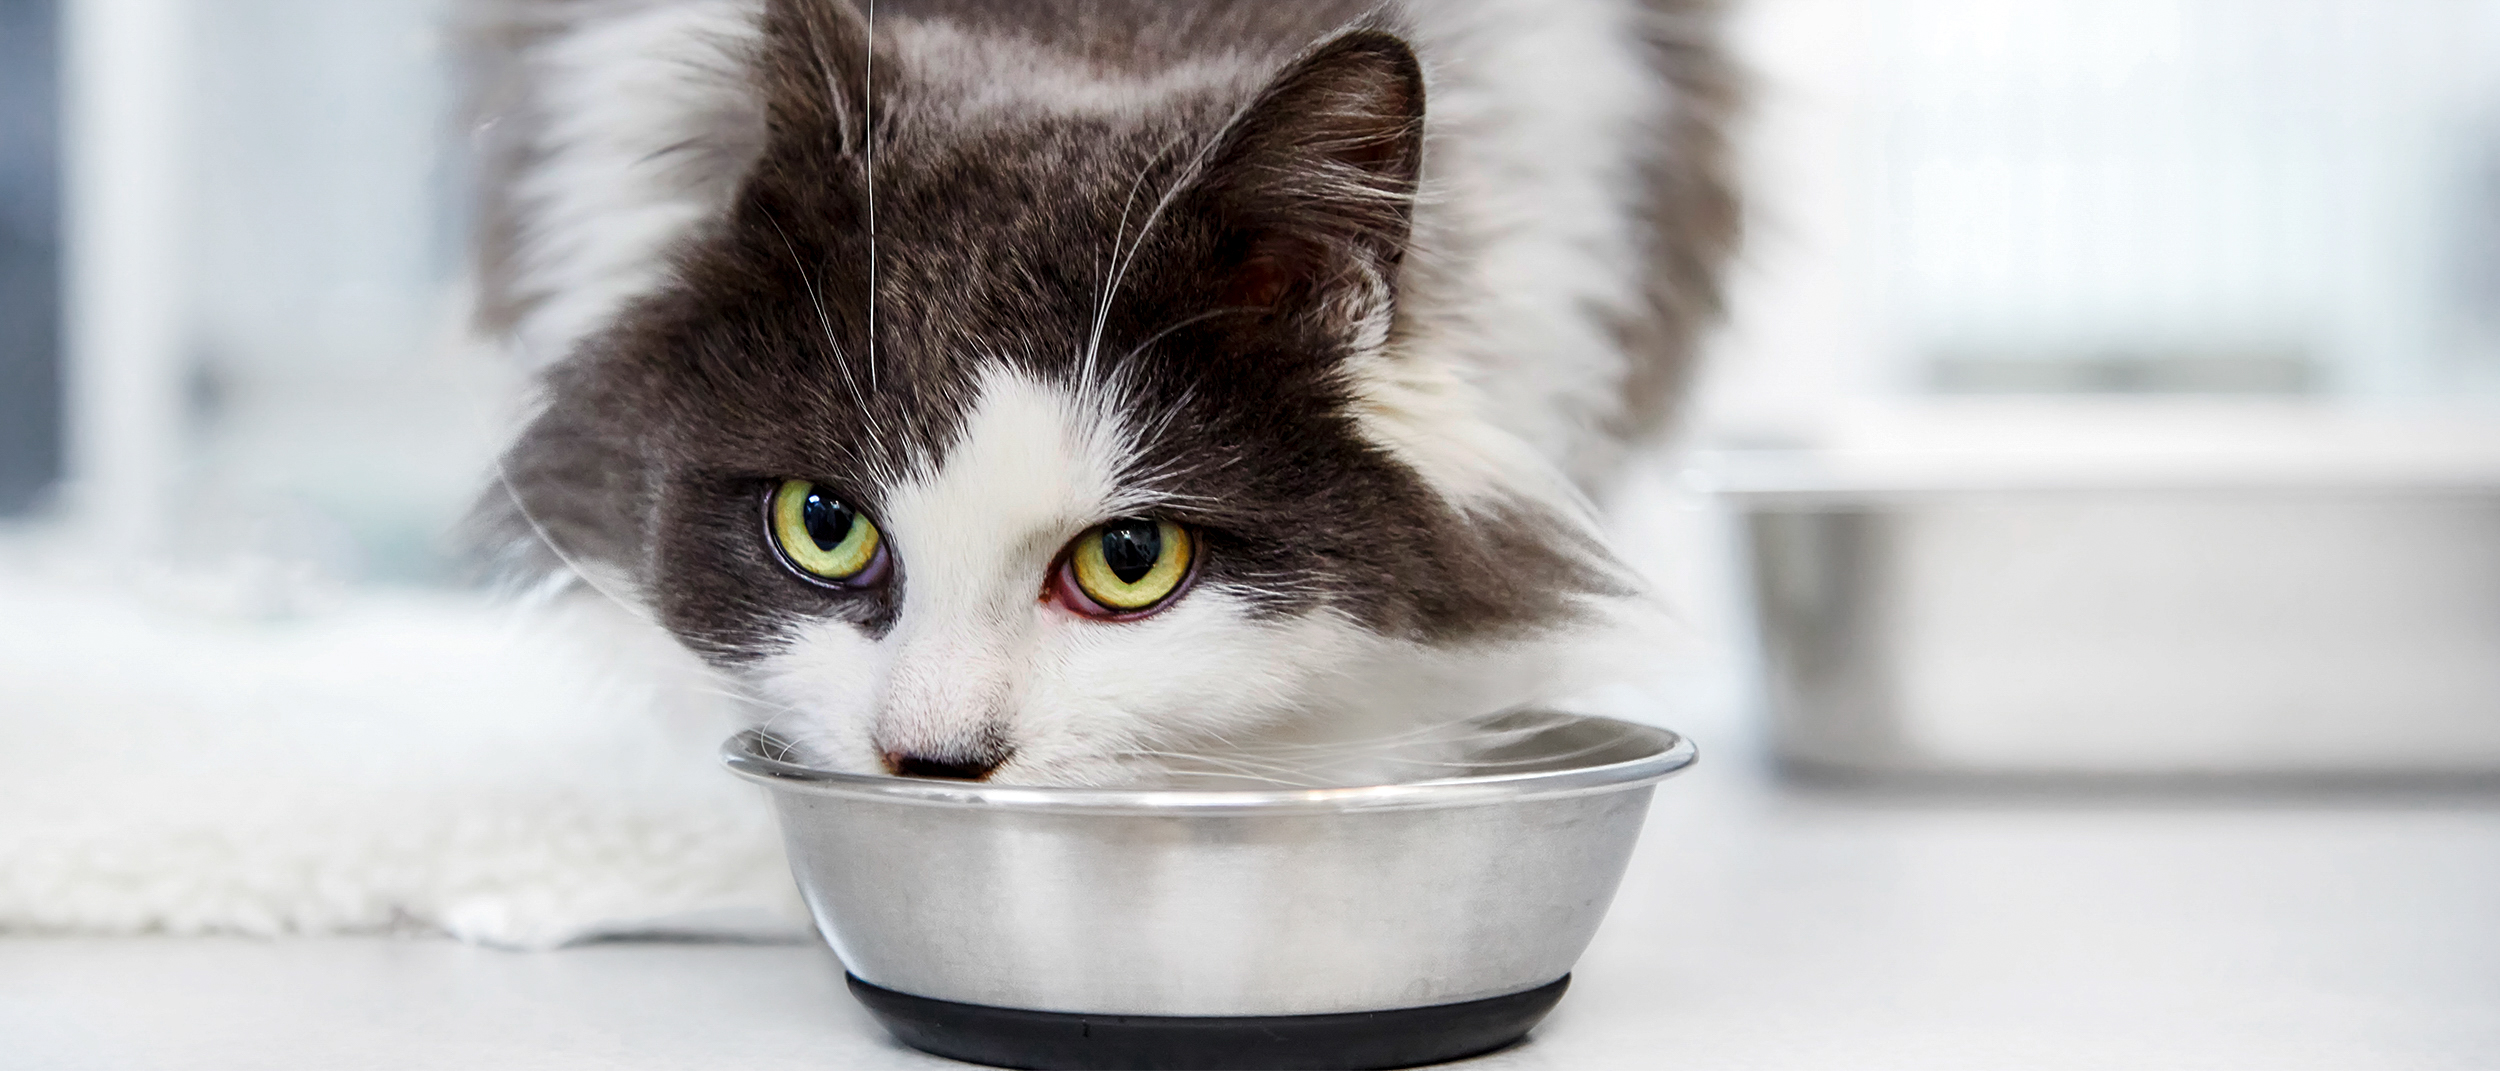 Täysikasvuinen kissa syö hopeanvärisestä kulhosta eläinlääkärillä.